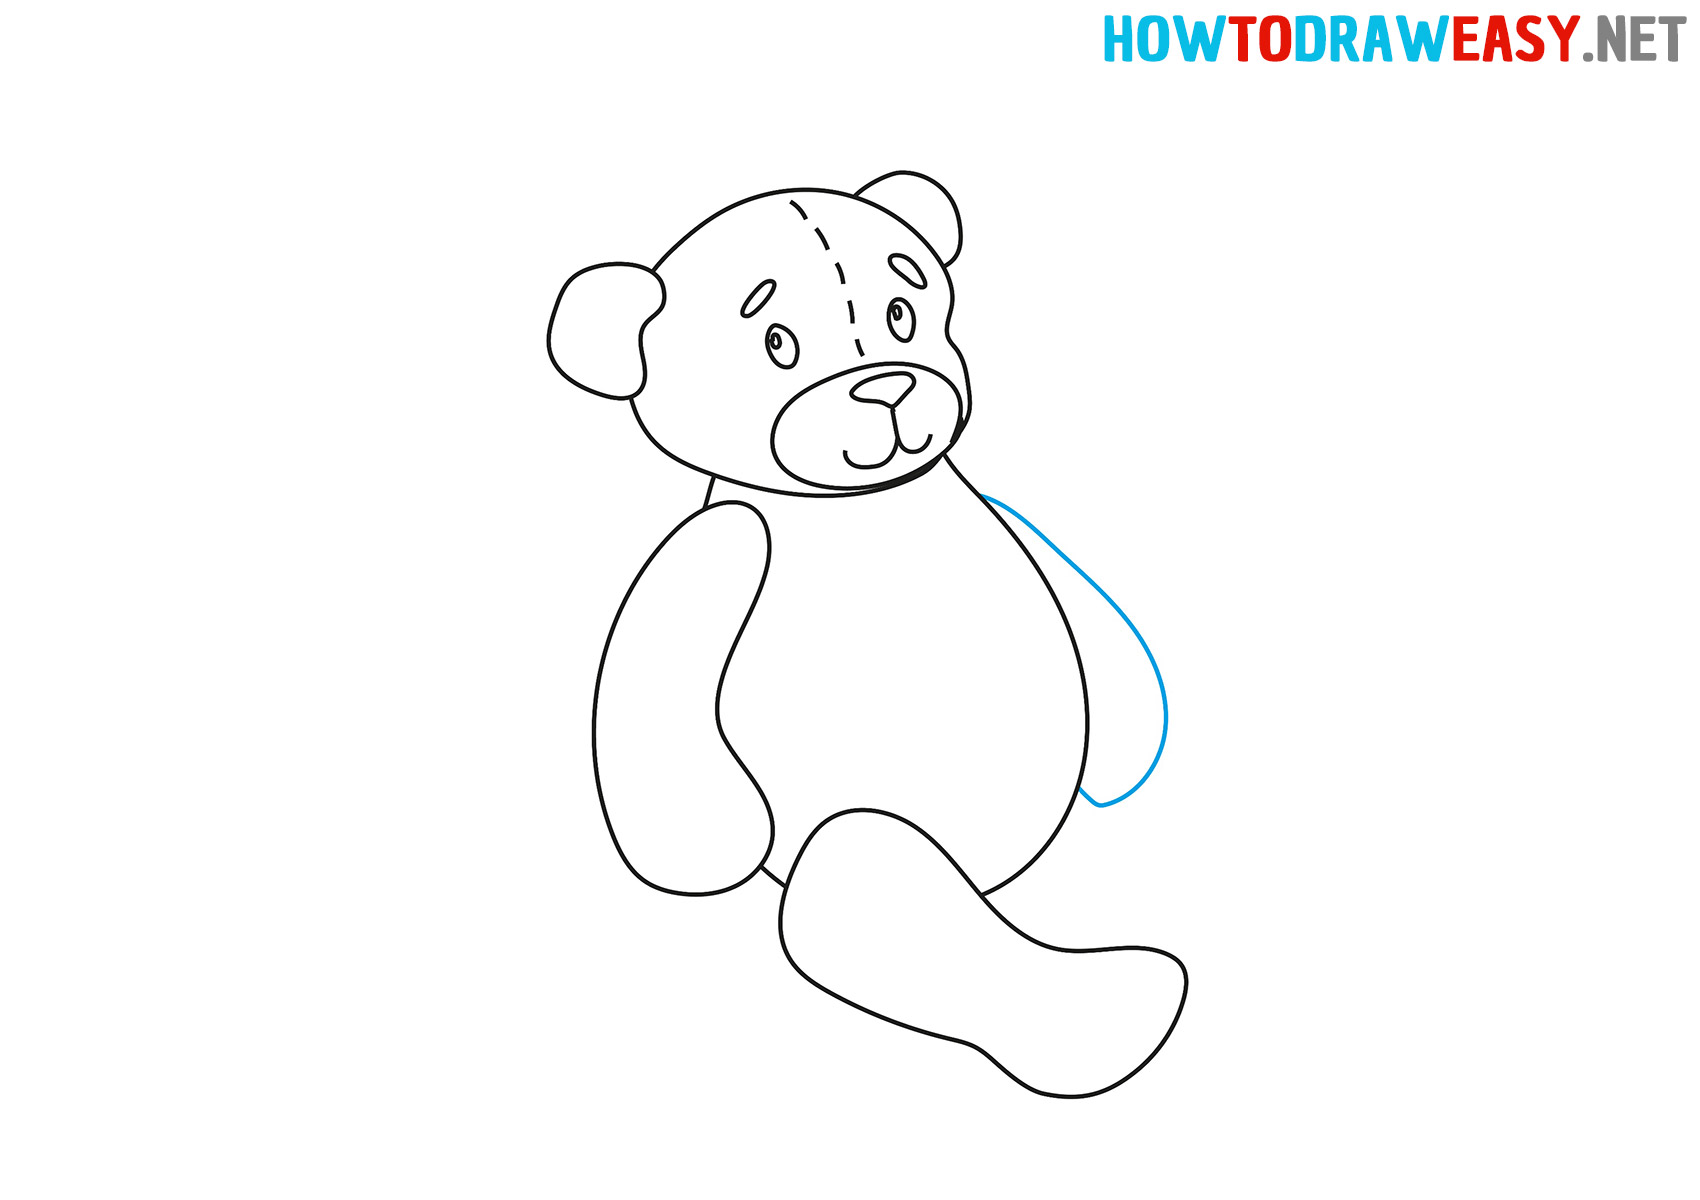 How to Draw a Cartoon Teddy Bear